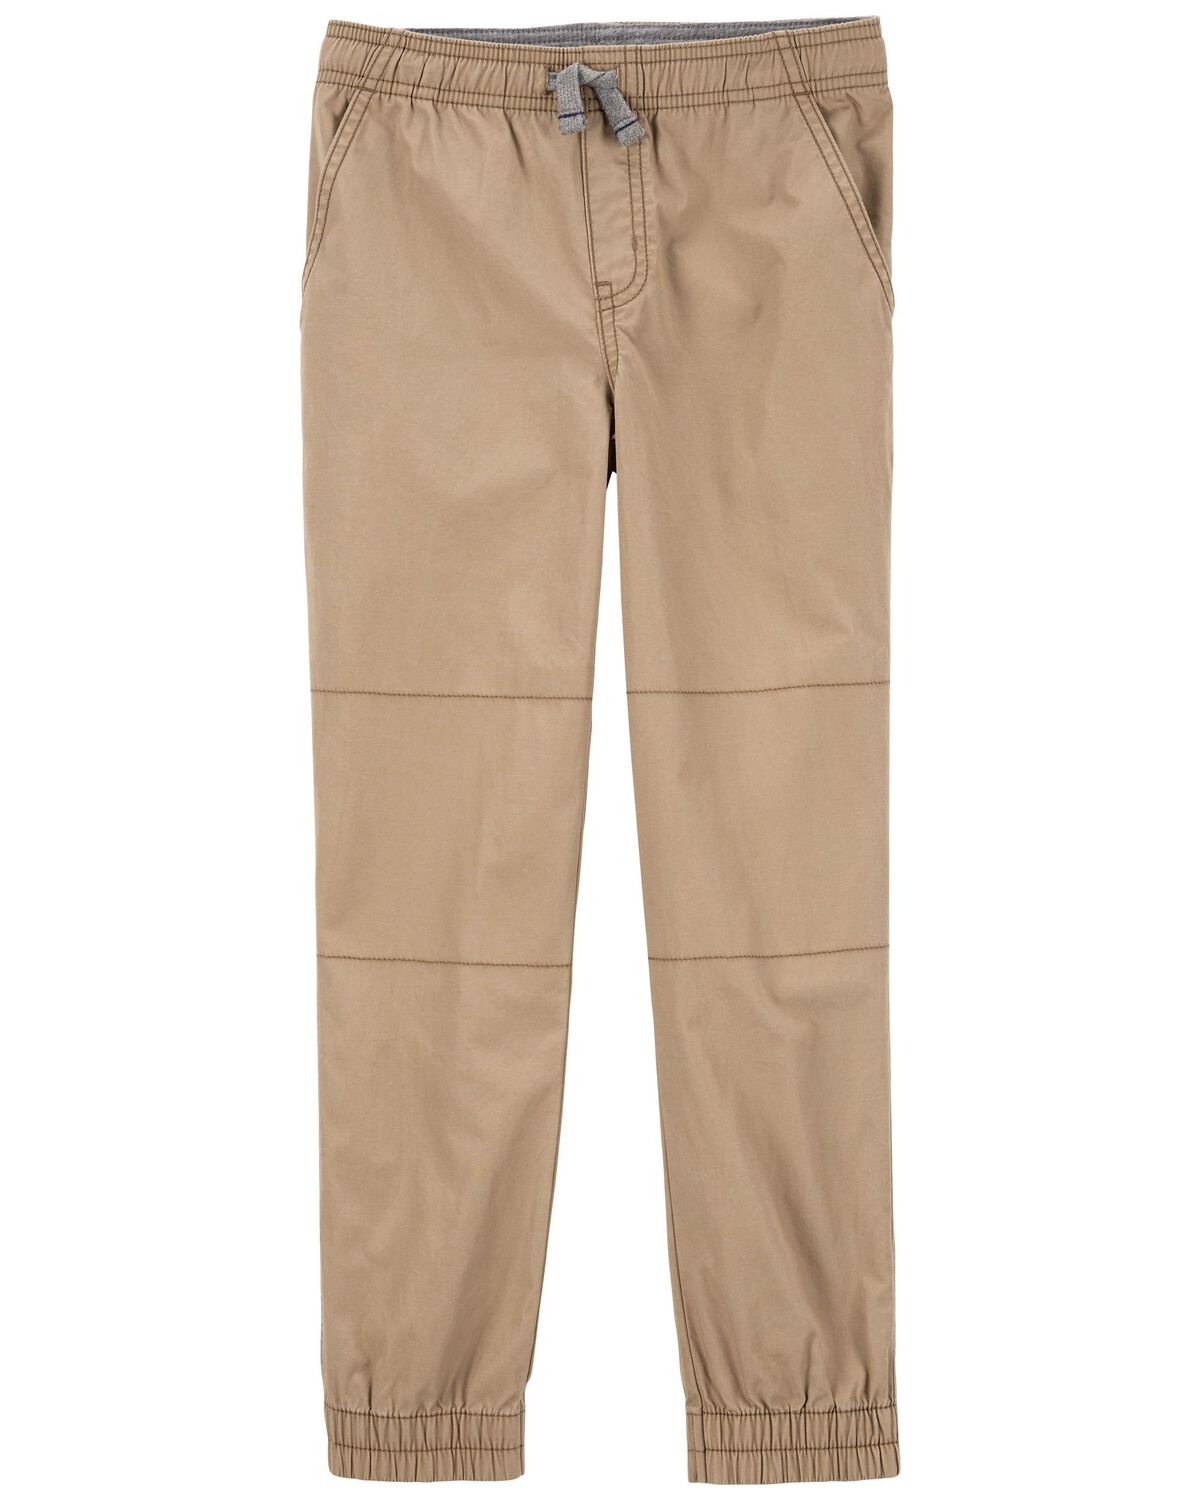 Khaki Kid Everyday Pull-On Pants | carters.com